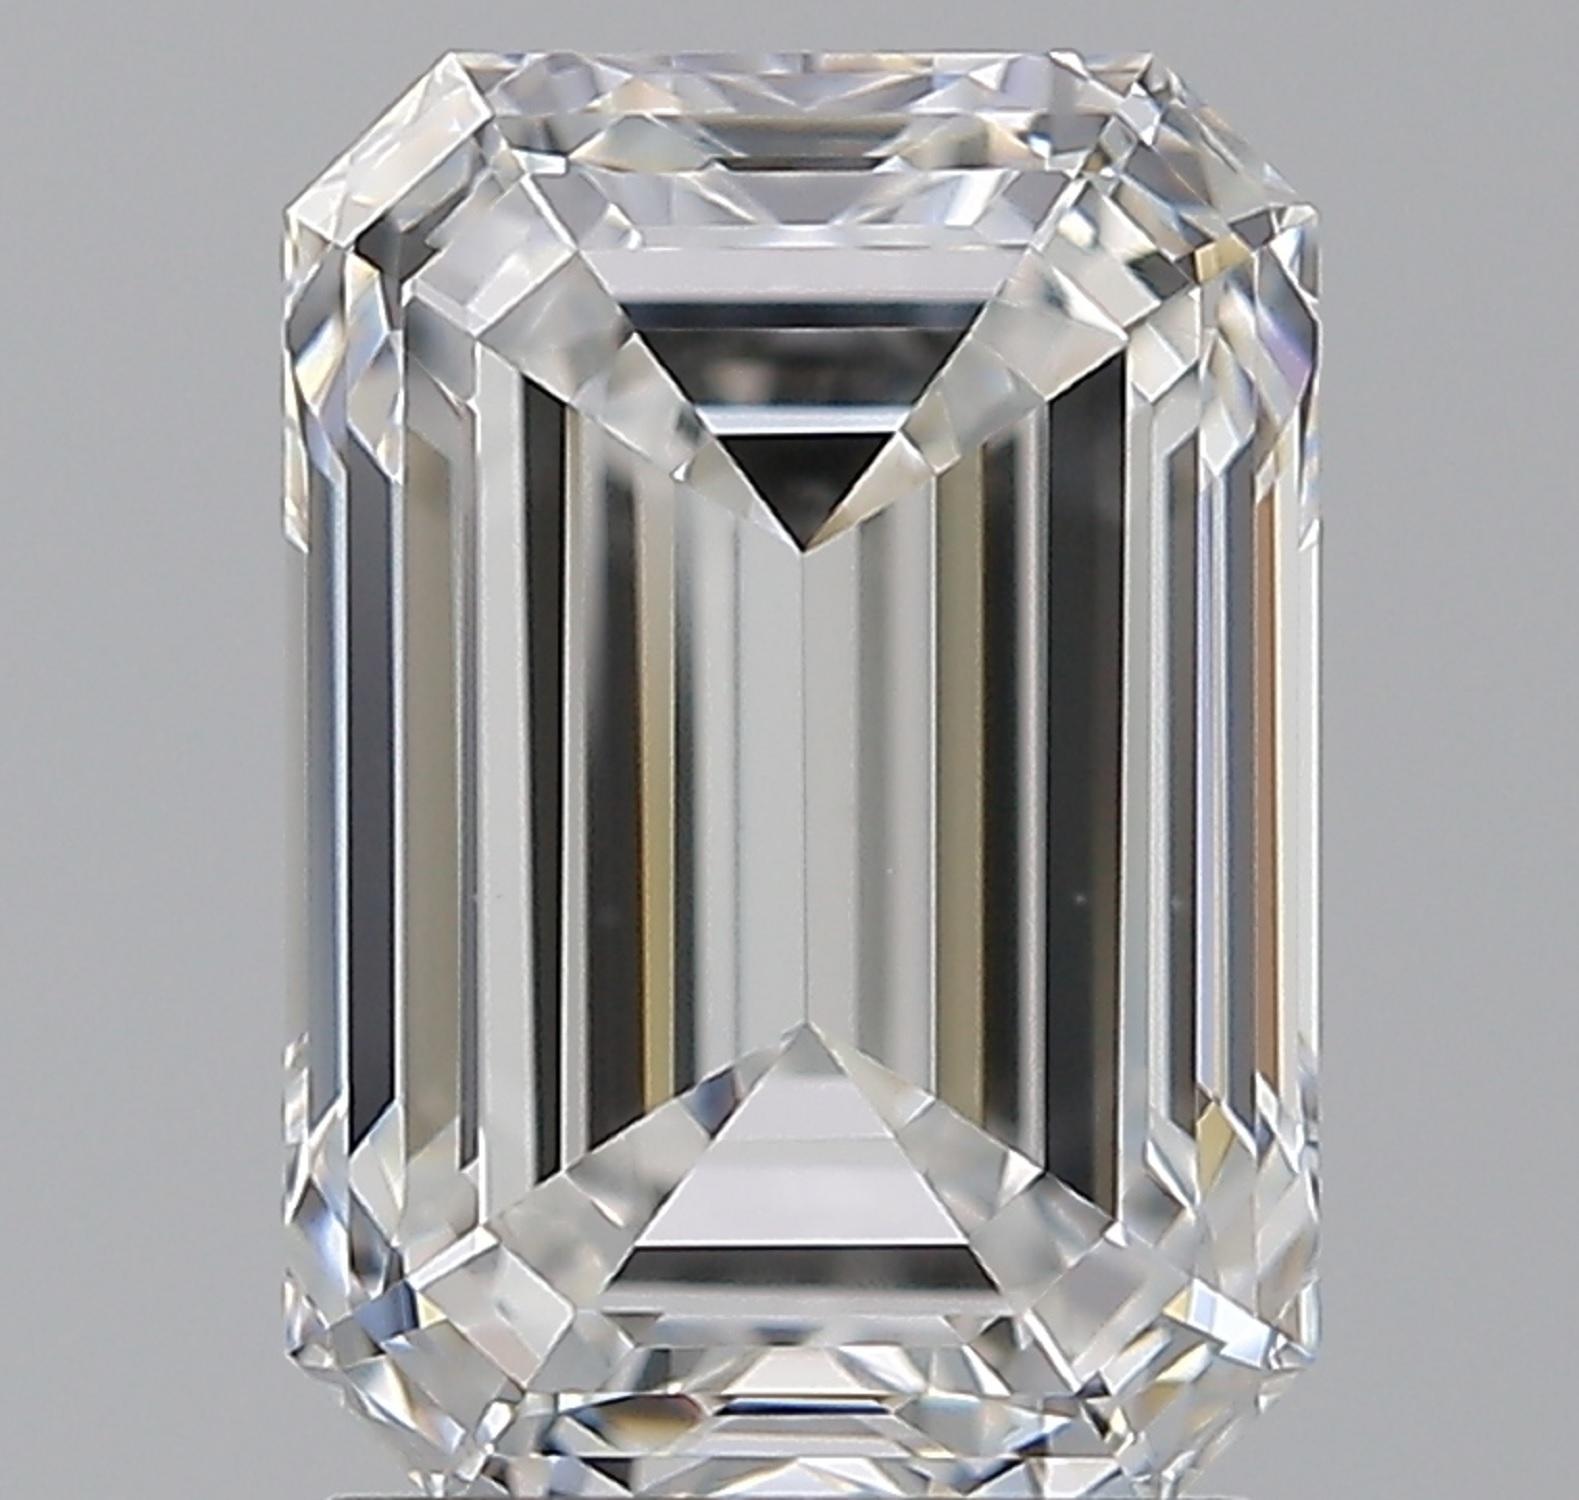 2.5 ct emerald cut diamond